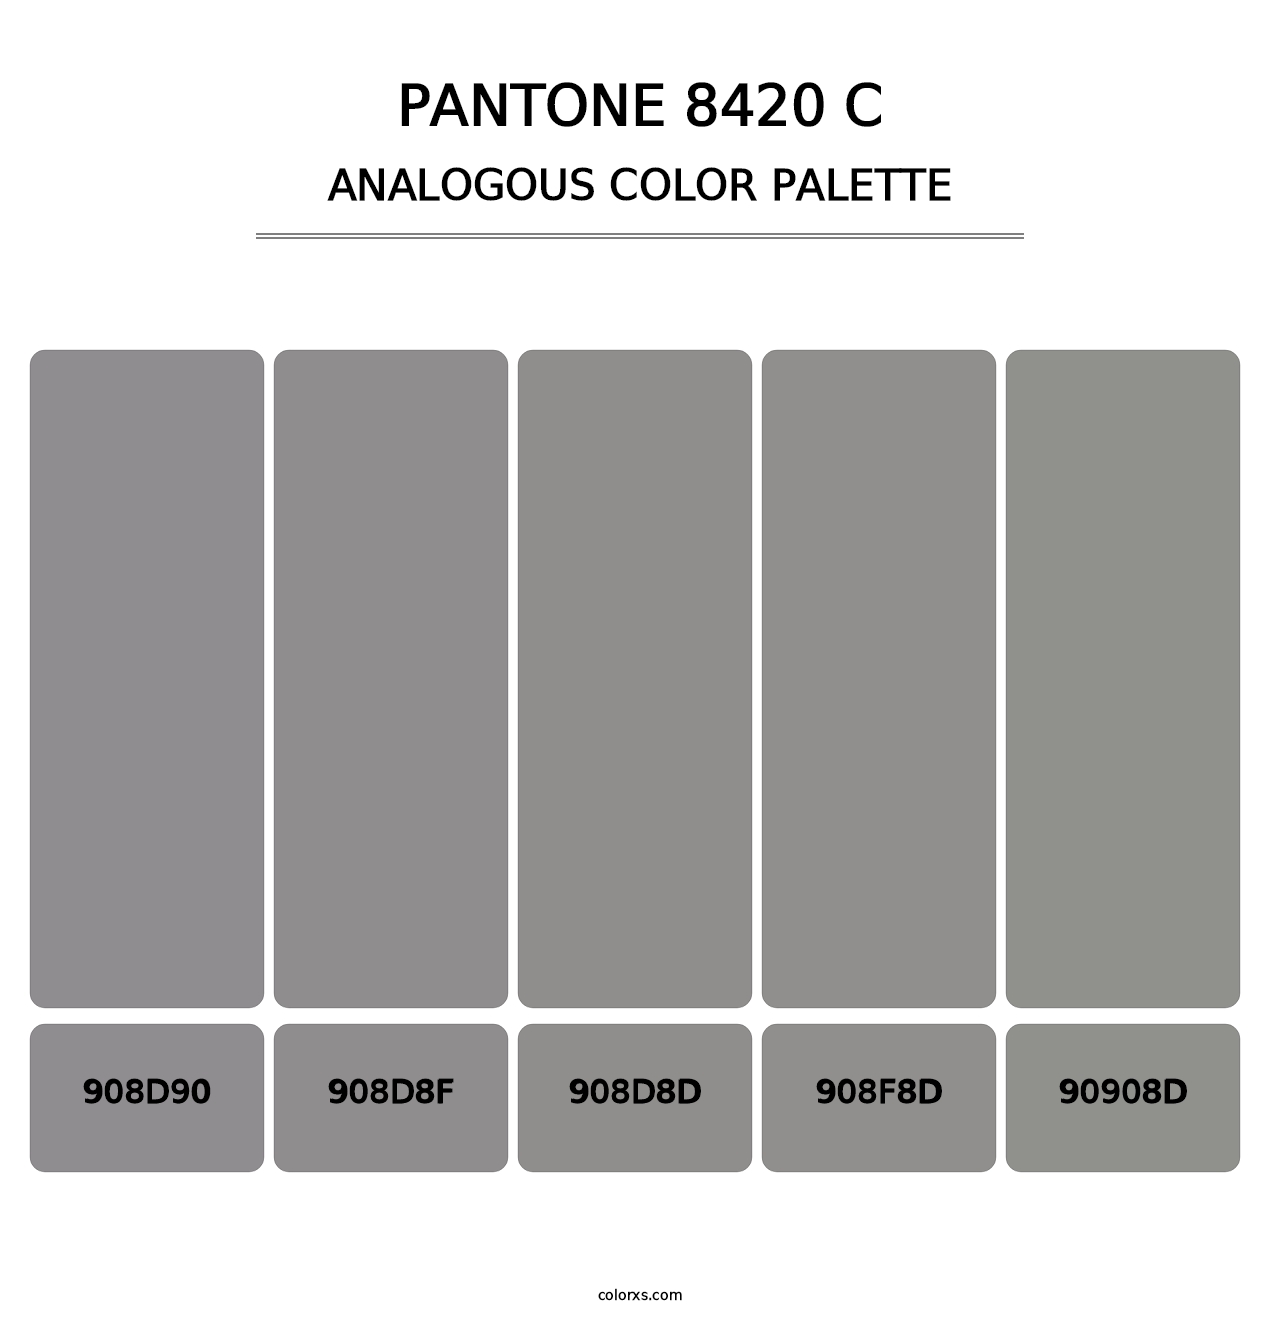 PANTONE 8420 C - Analogous Color Palette